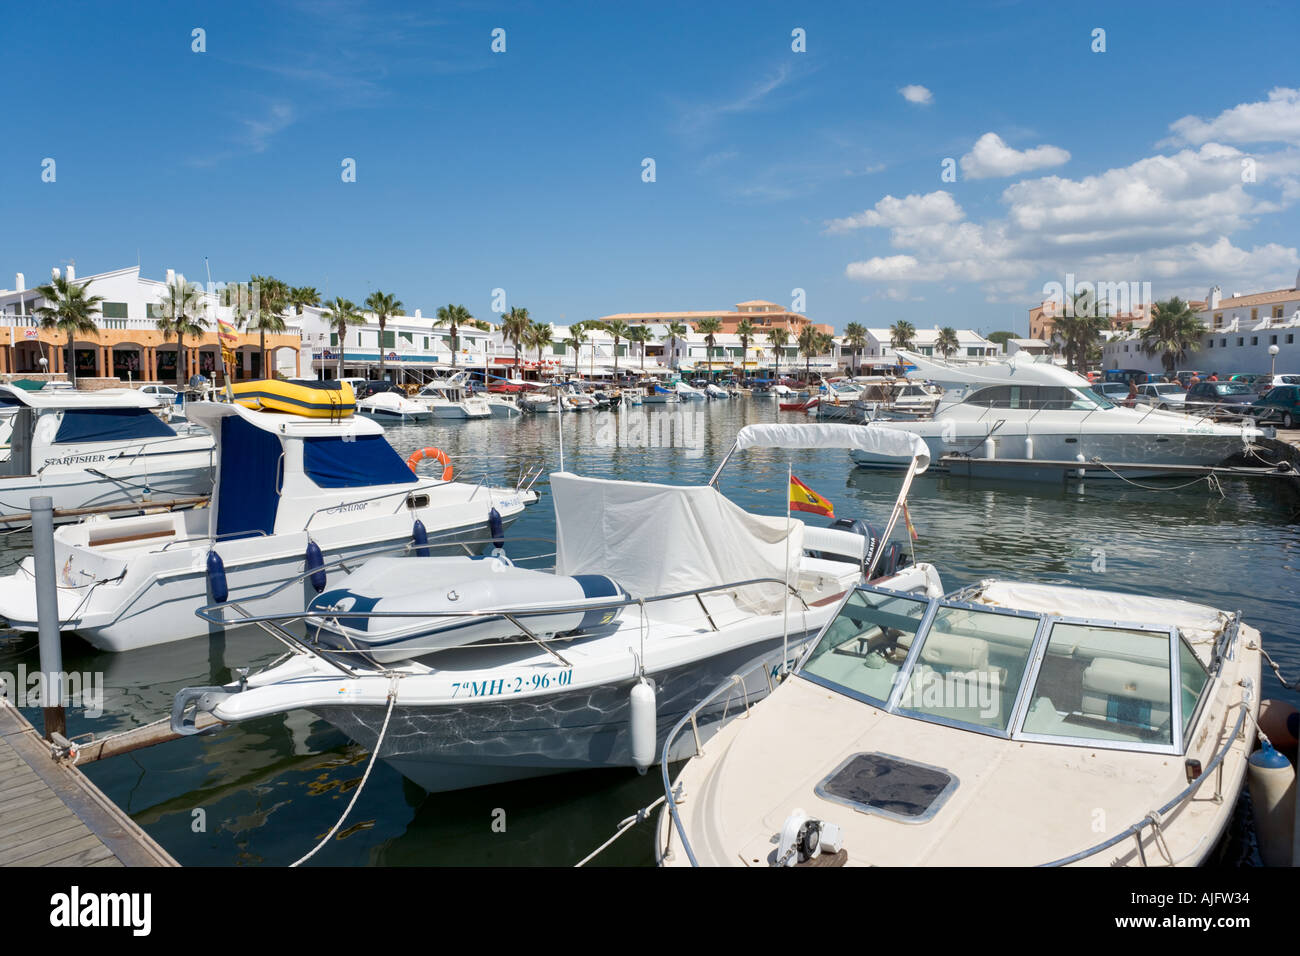 Les bateaux de plaisance dans le port de Cala'n Bosch, Minorque, Iles Baléares, Espagne Banque D'Images